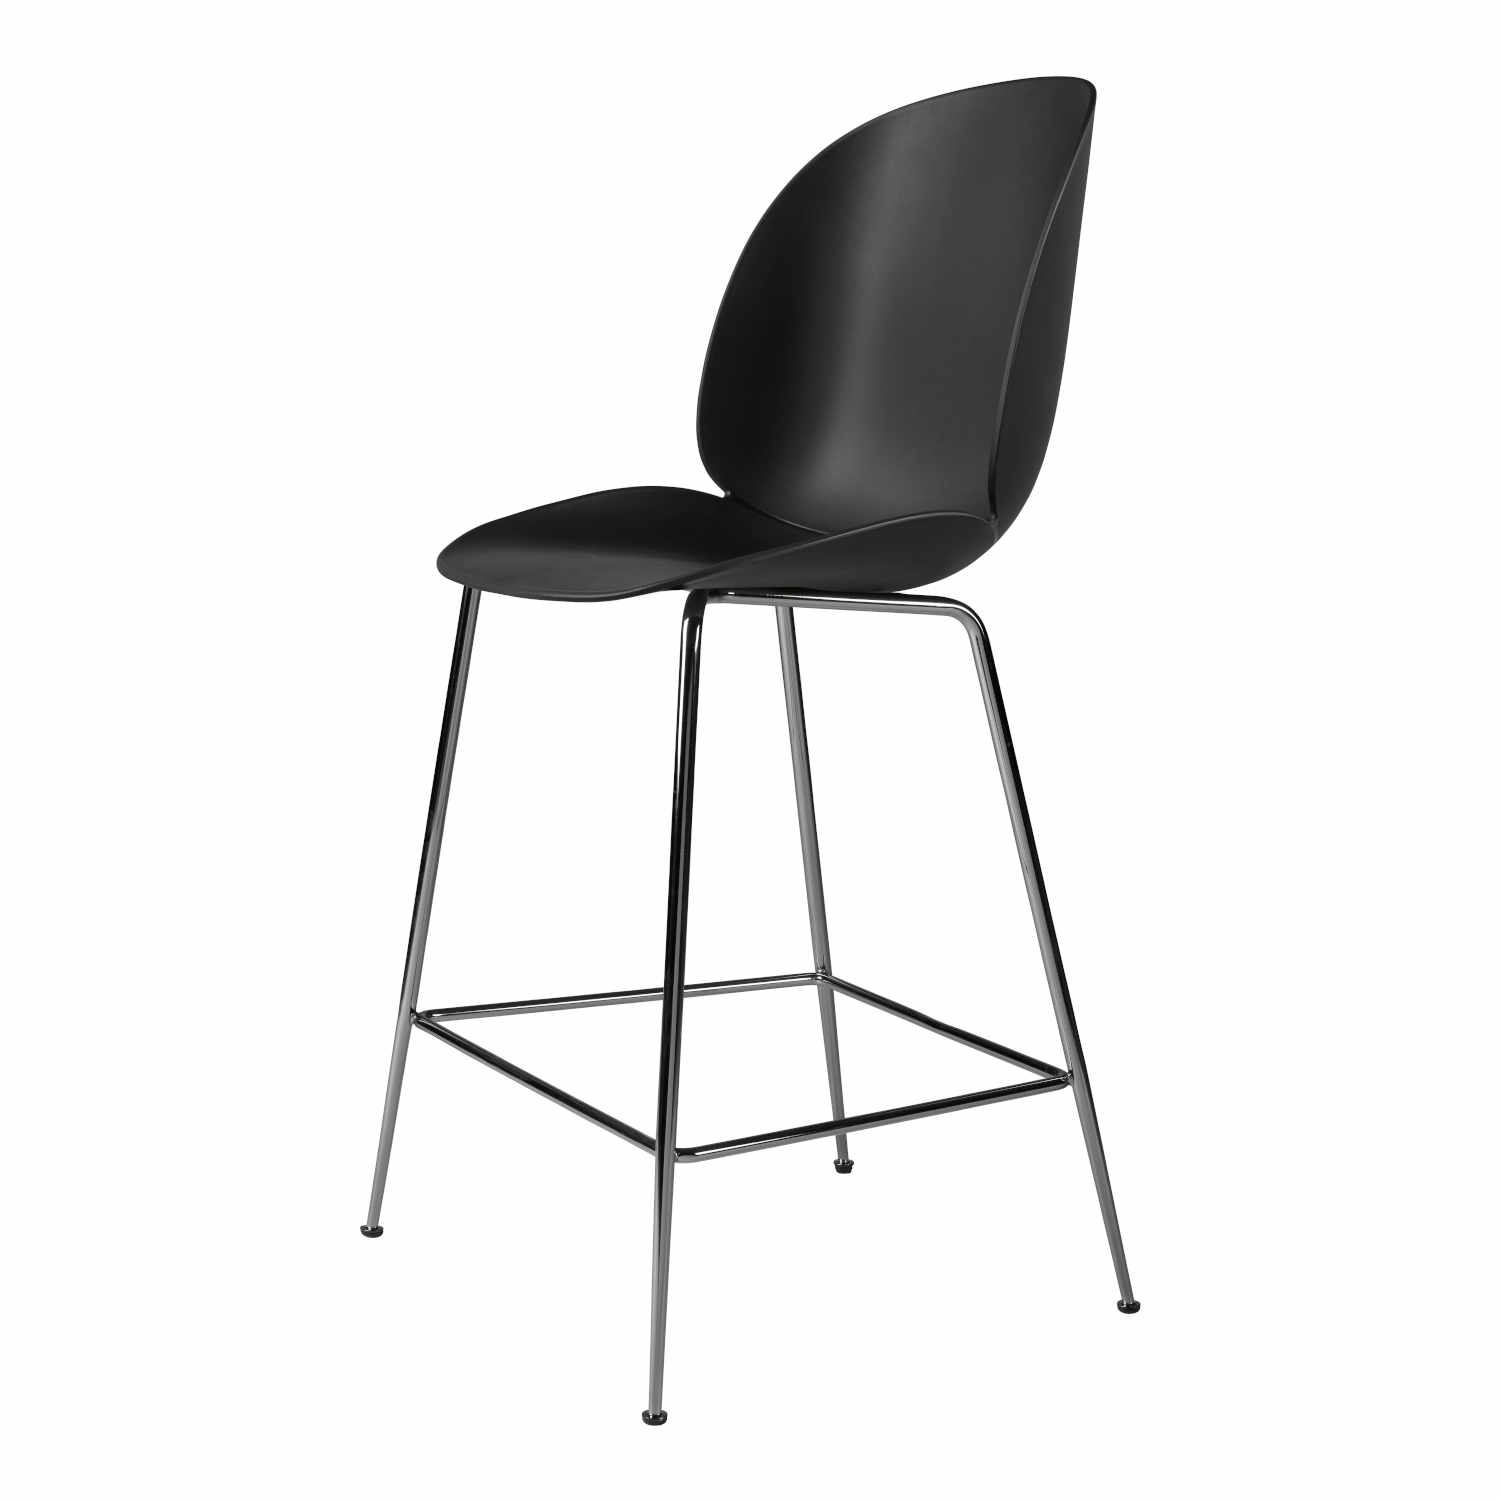 Beetle Counter Chair Conic Barhocker, Grösse sitzhöhe 63,5 cm, Sitzschale Plastic Shell alabaster white, Untergestell Conic Base black chrome von GUBI